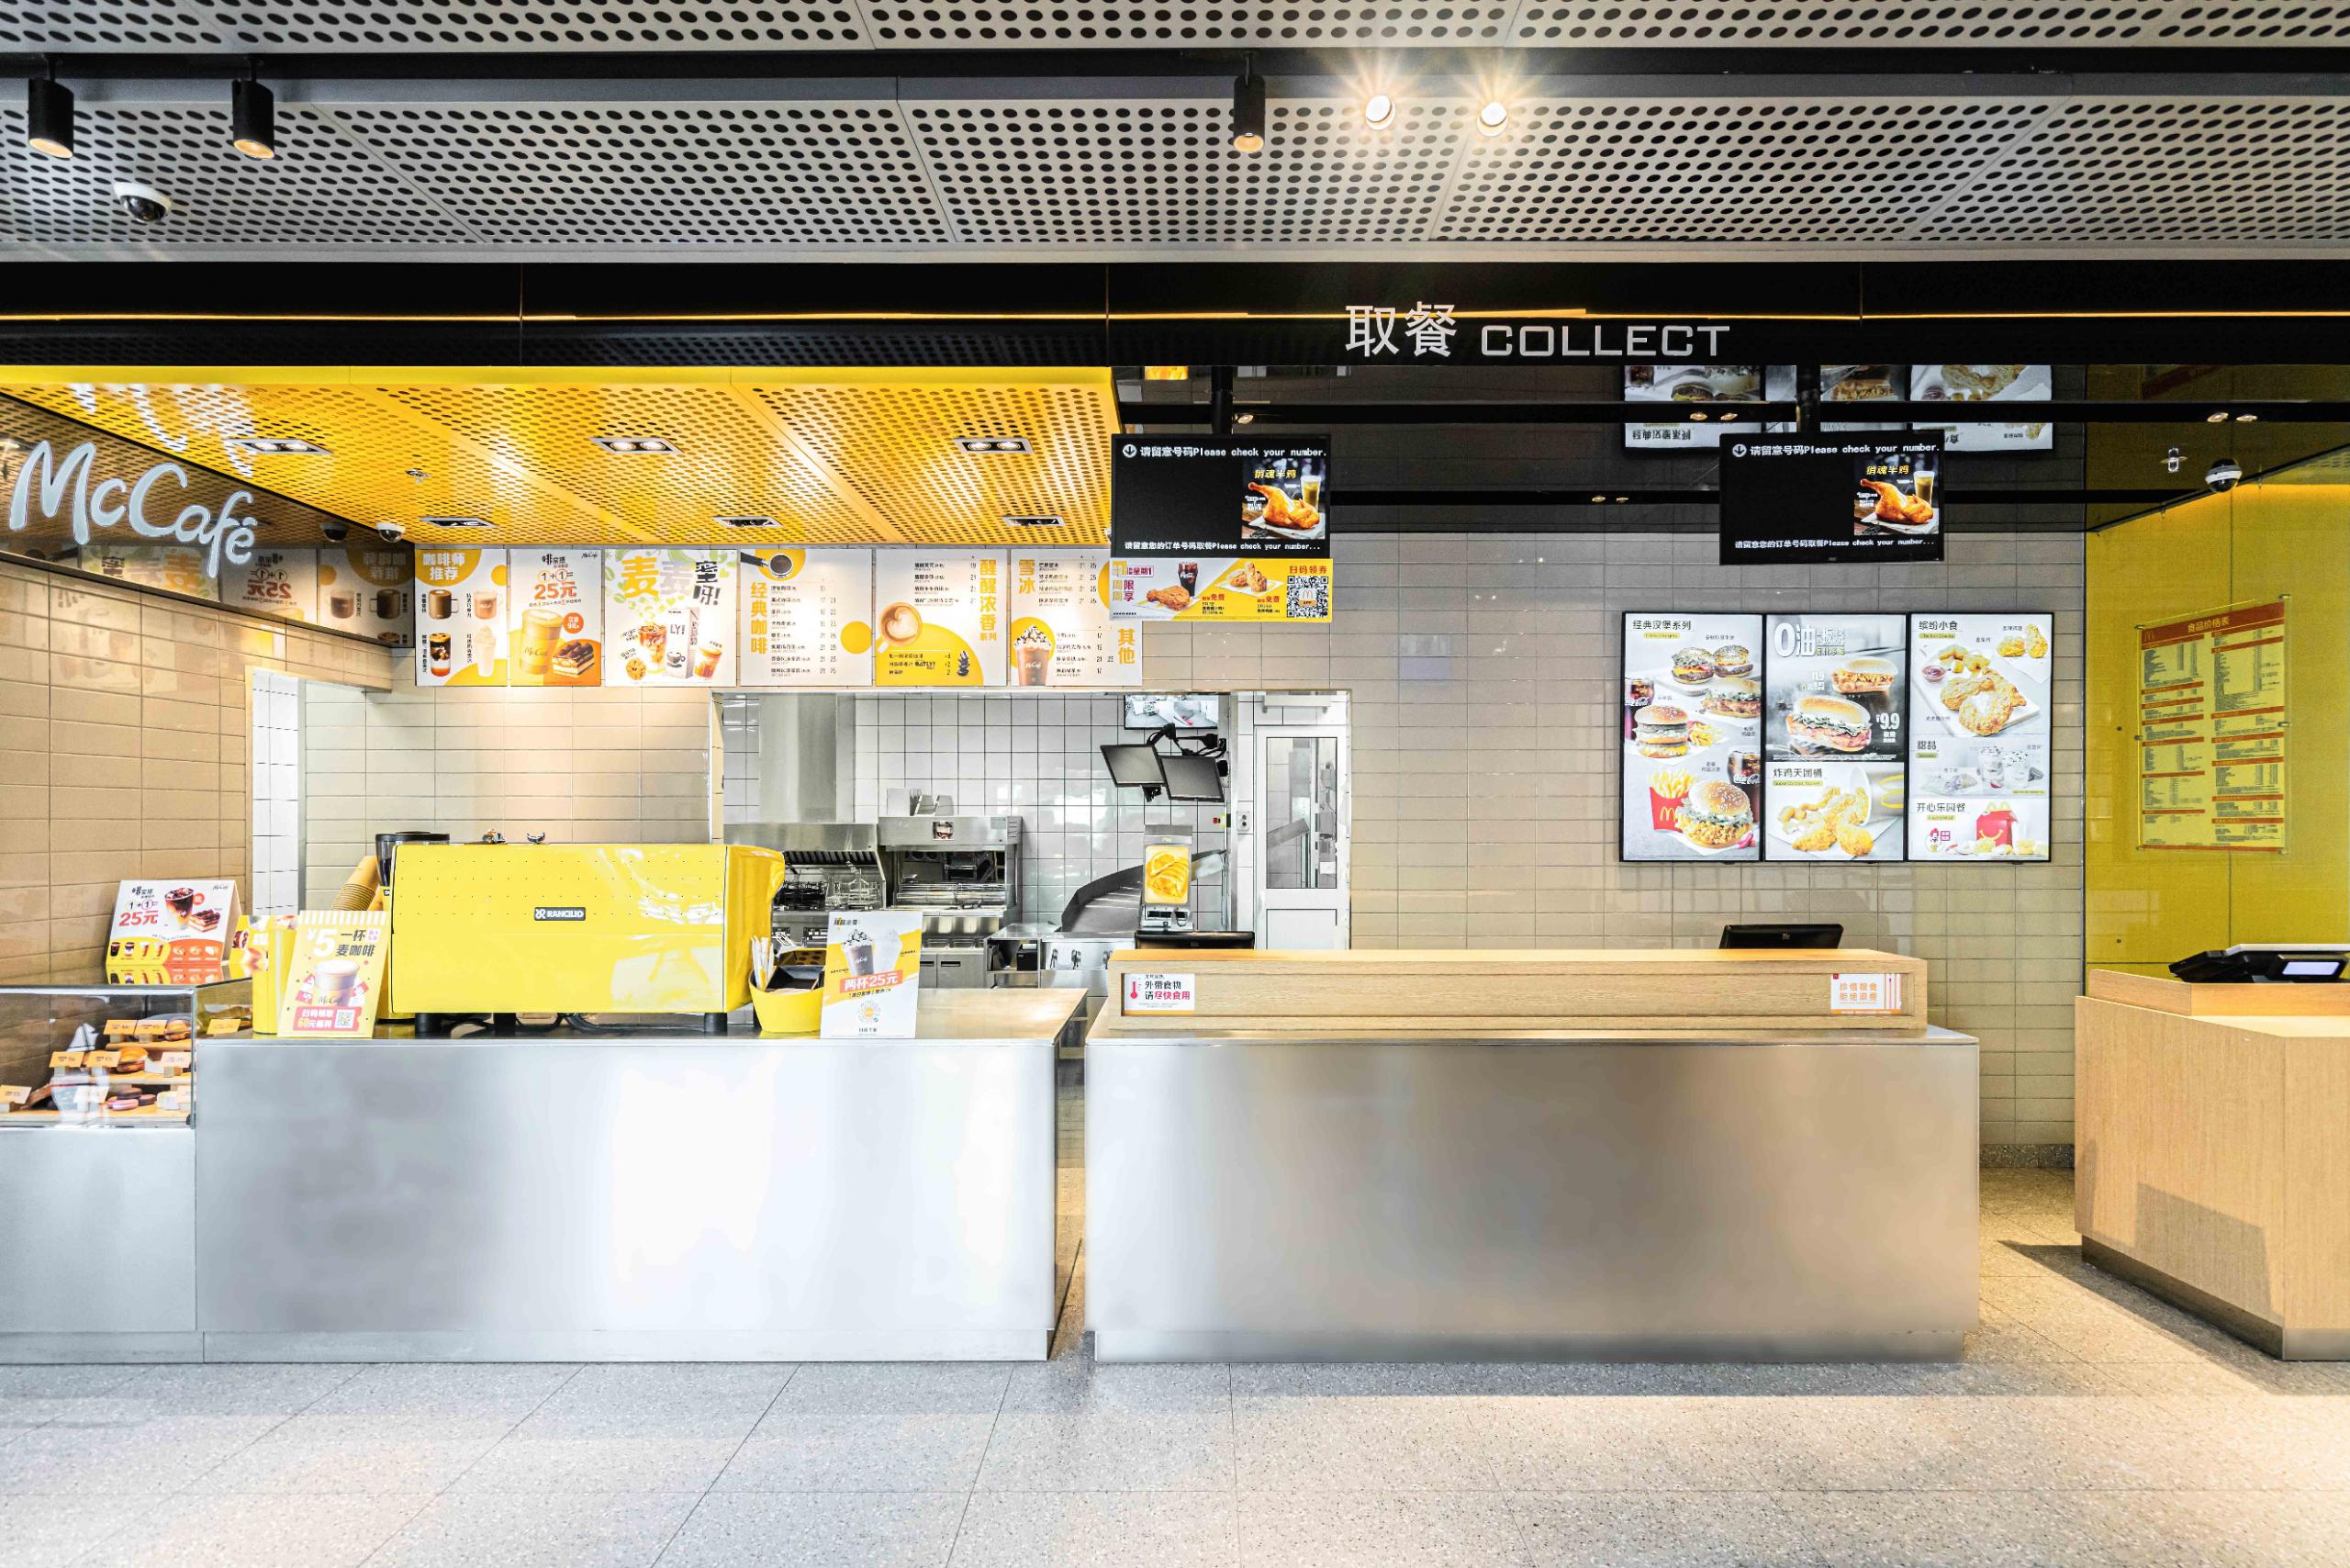 全球最美 McDonald’s 麦当劳 餐厅现身荷兰鹿特丹 – Malt 麦芽